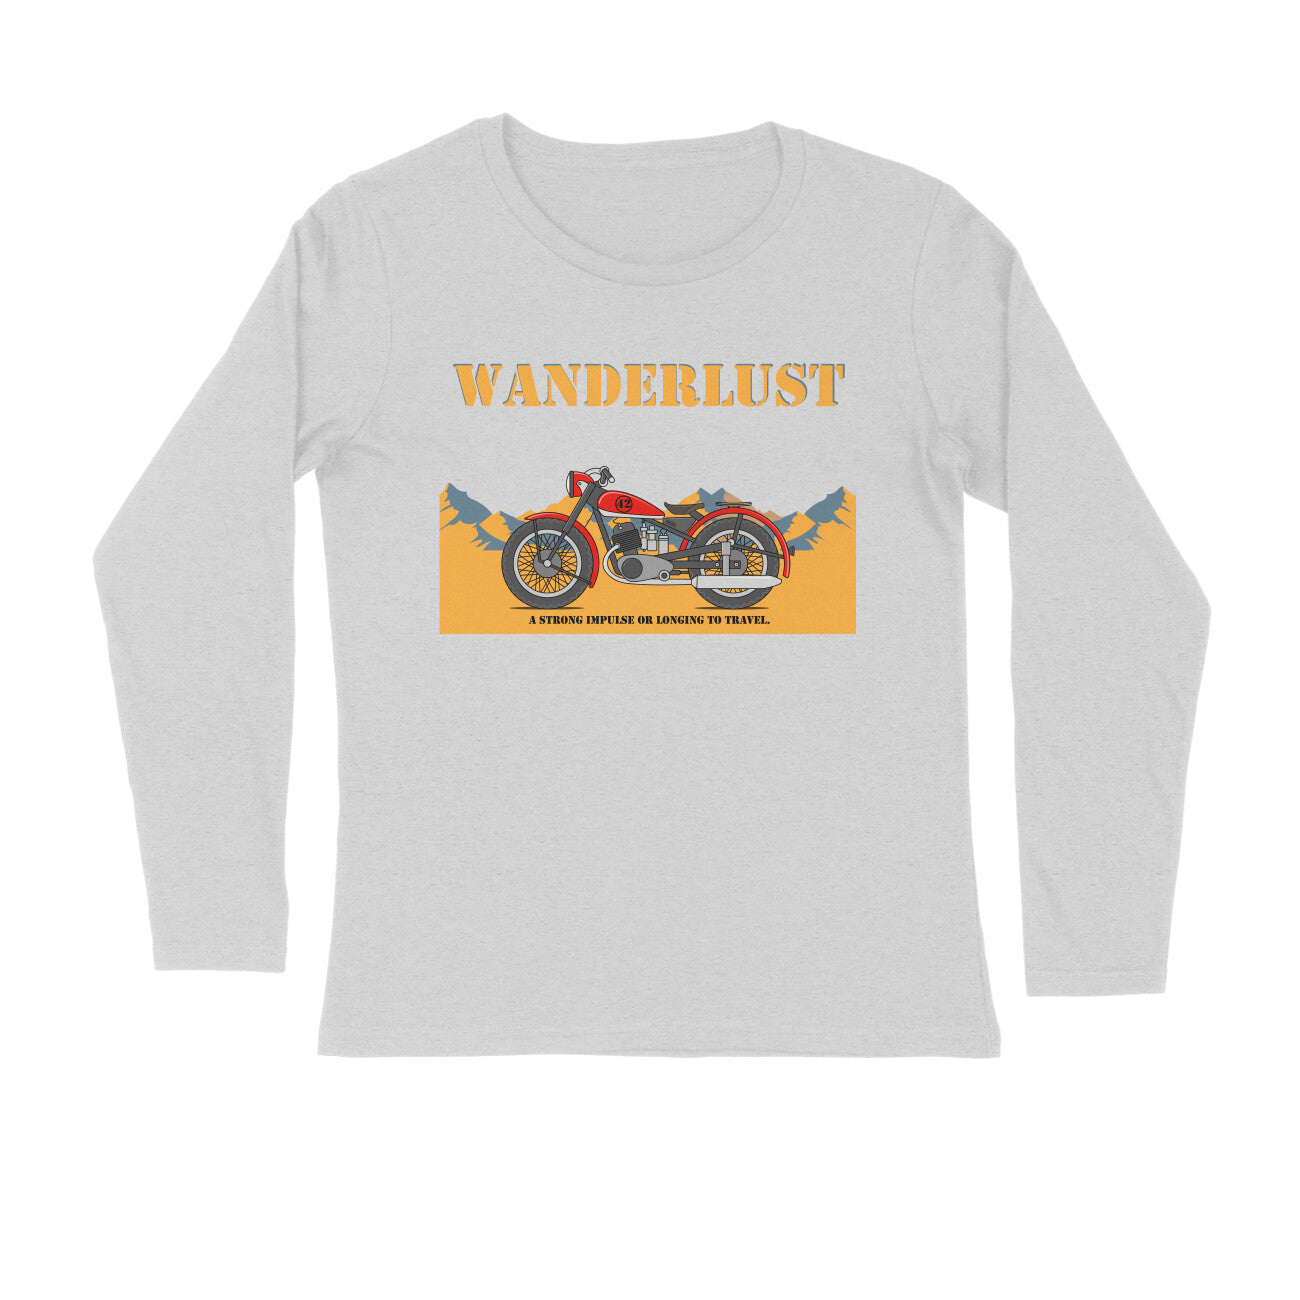 Men's Long Sleeve T-shirt - Wanderlust puraidoprints